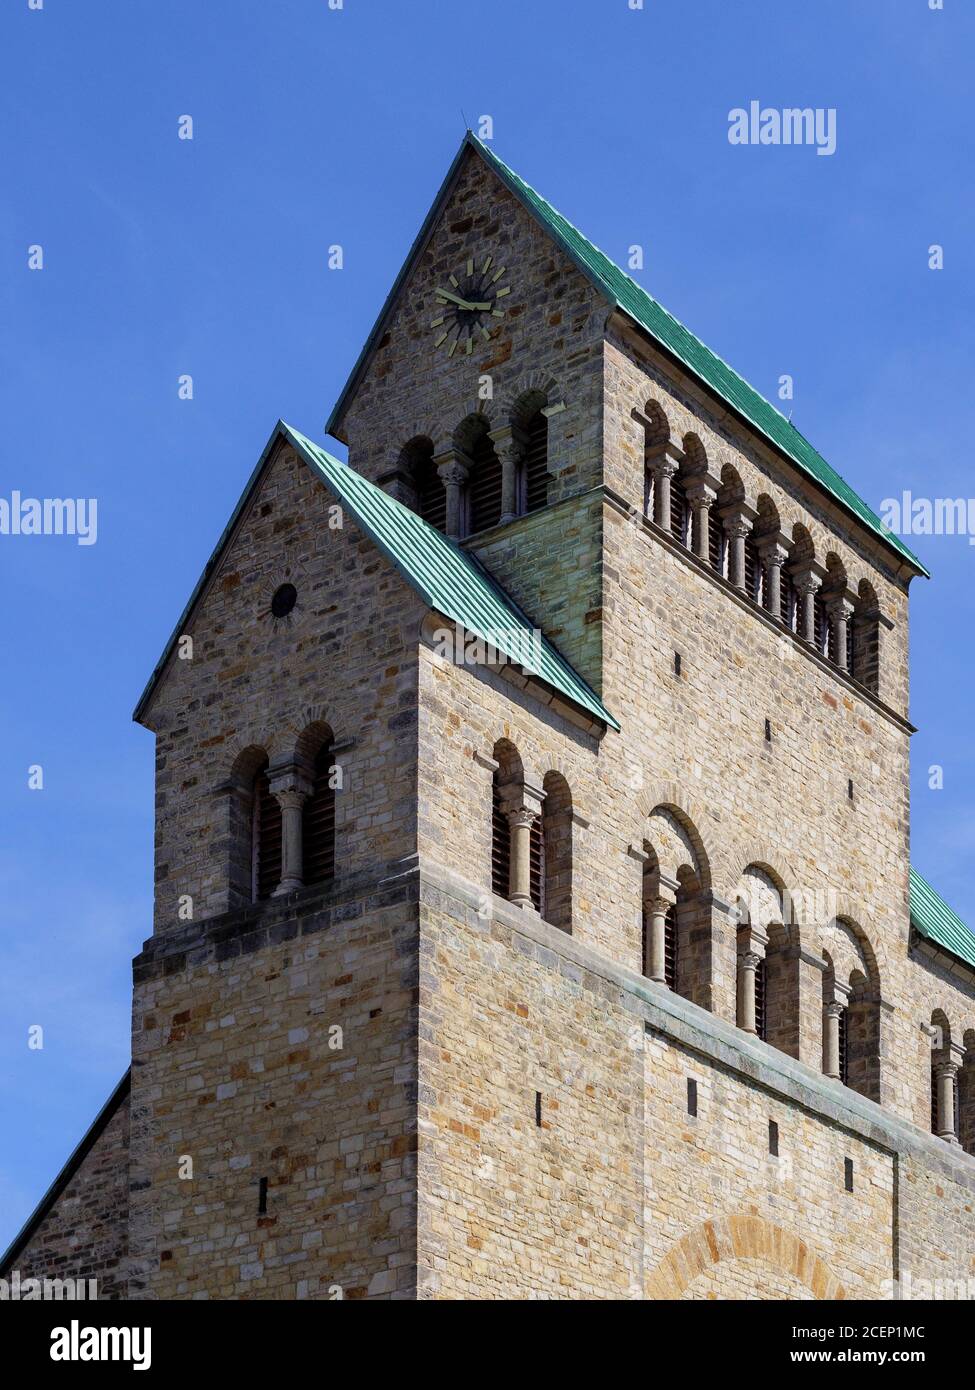 Mariendom, Hildesheim, Niedersachsen, Deutschland, Europa, UNESCO Weltkulturerbe Cathédrale Saint-Mary Hildesheim, Basse-Saxe, Allemagne, Europe, UNES Banque D'Images